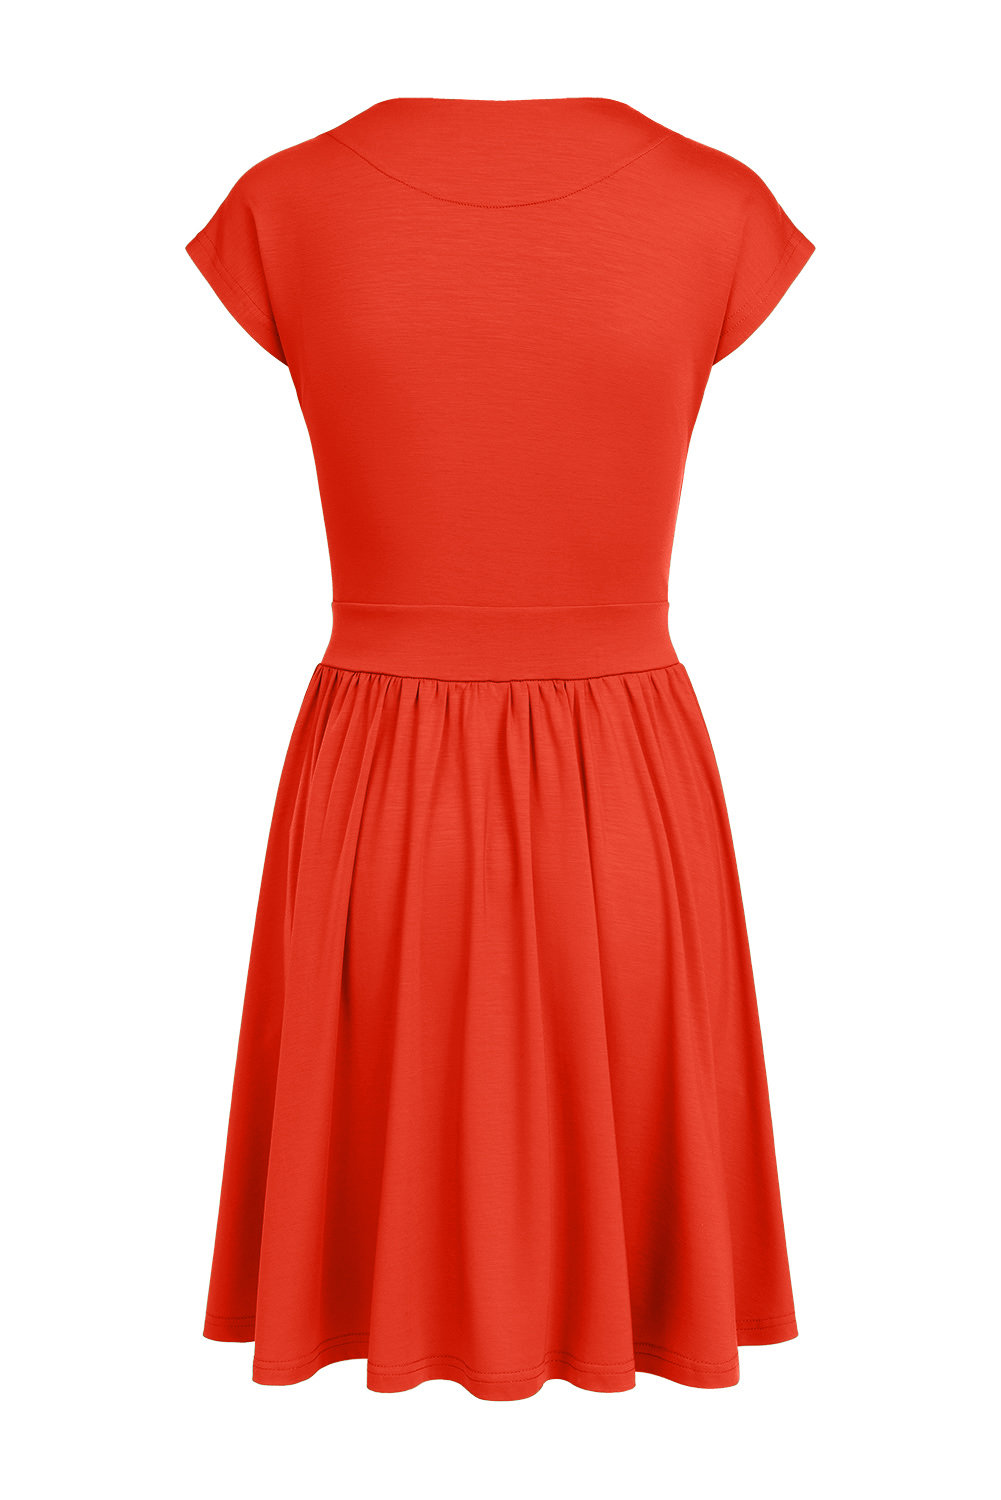 Kate Mini - krótsza sukienka z krótkim rękawem i kieszeniami Poinciana